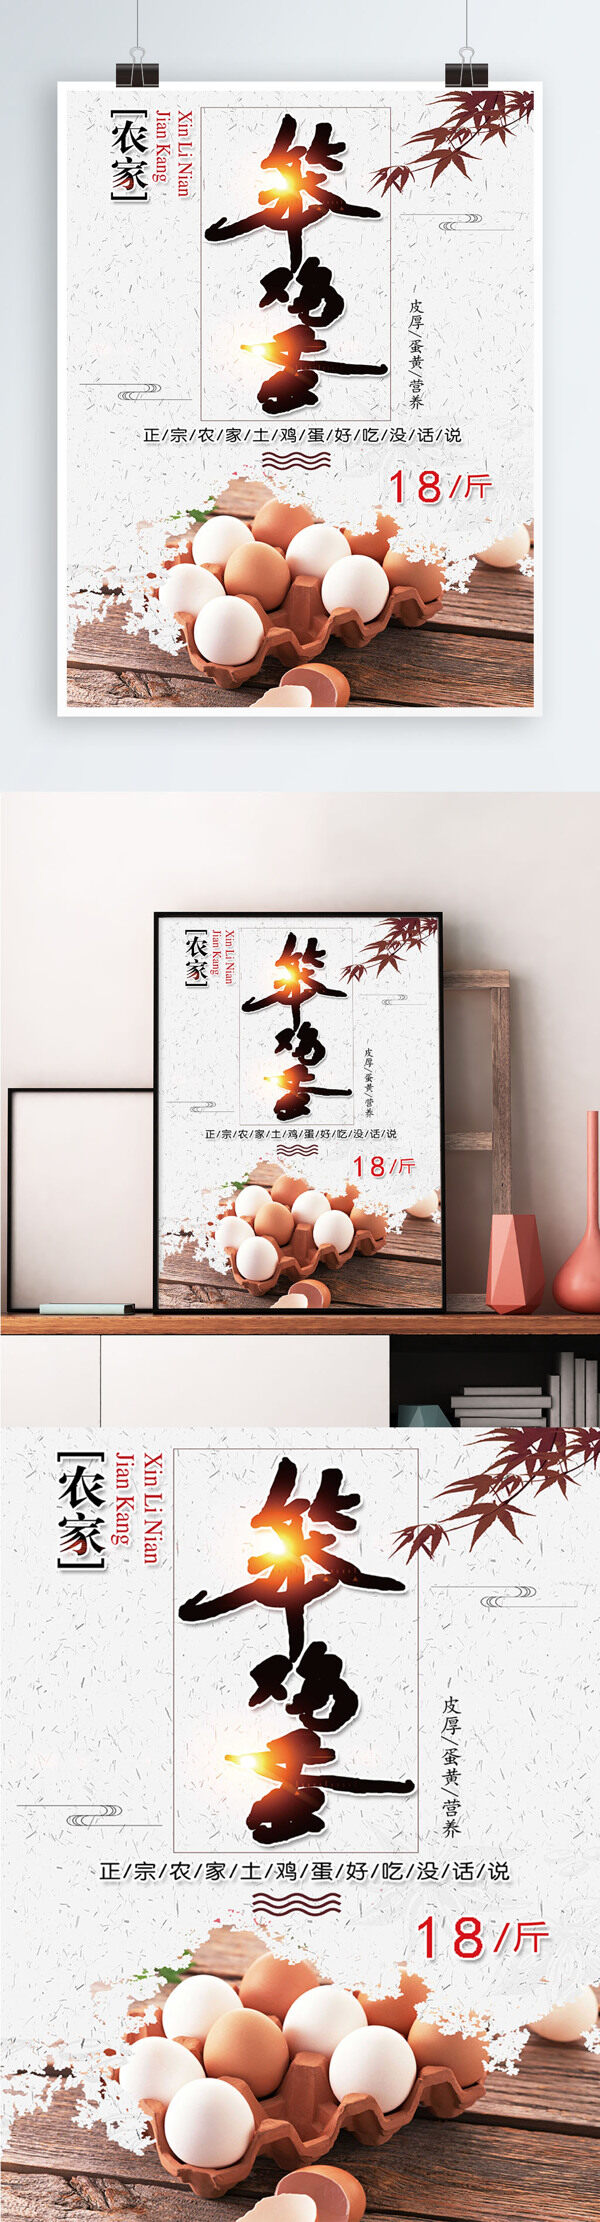 白色背景简约中国风土鸡蛋宣传海报